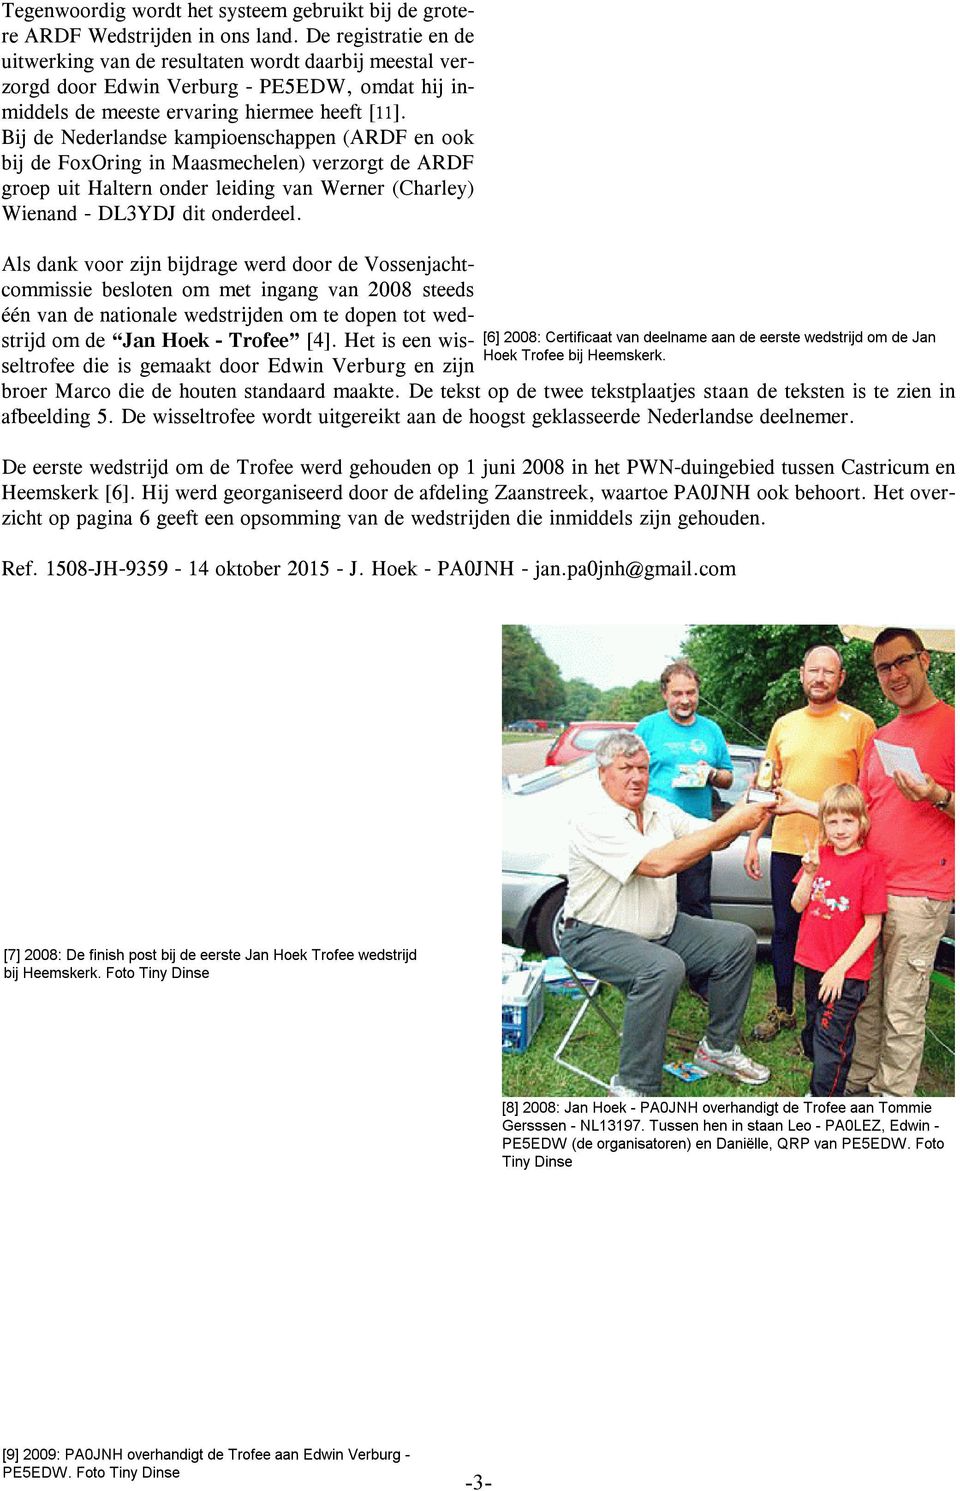 Bij de Nederlandse kampioenschappen (ARDF en ook bij de FoxOring in Maasmechelen) verzorgt de ARDF groep uit Haltern onder leiding van Werner (Charley) Wienand - DL3YDJ dit onderdeel.